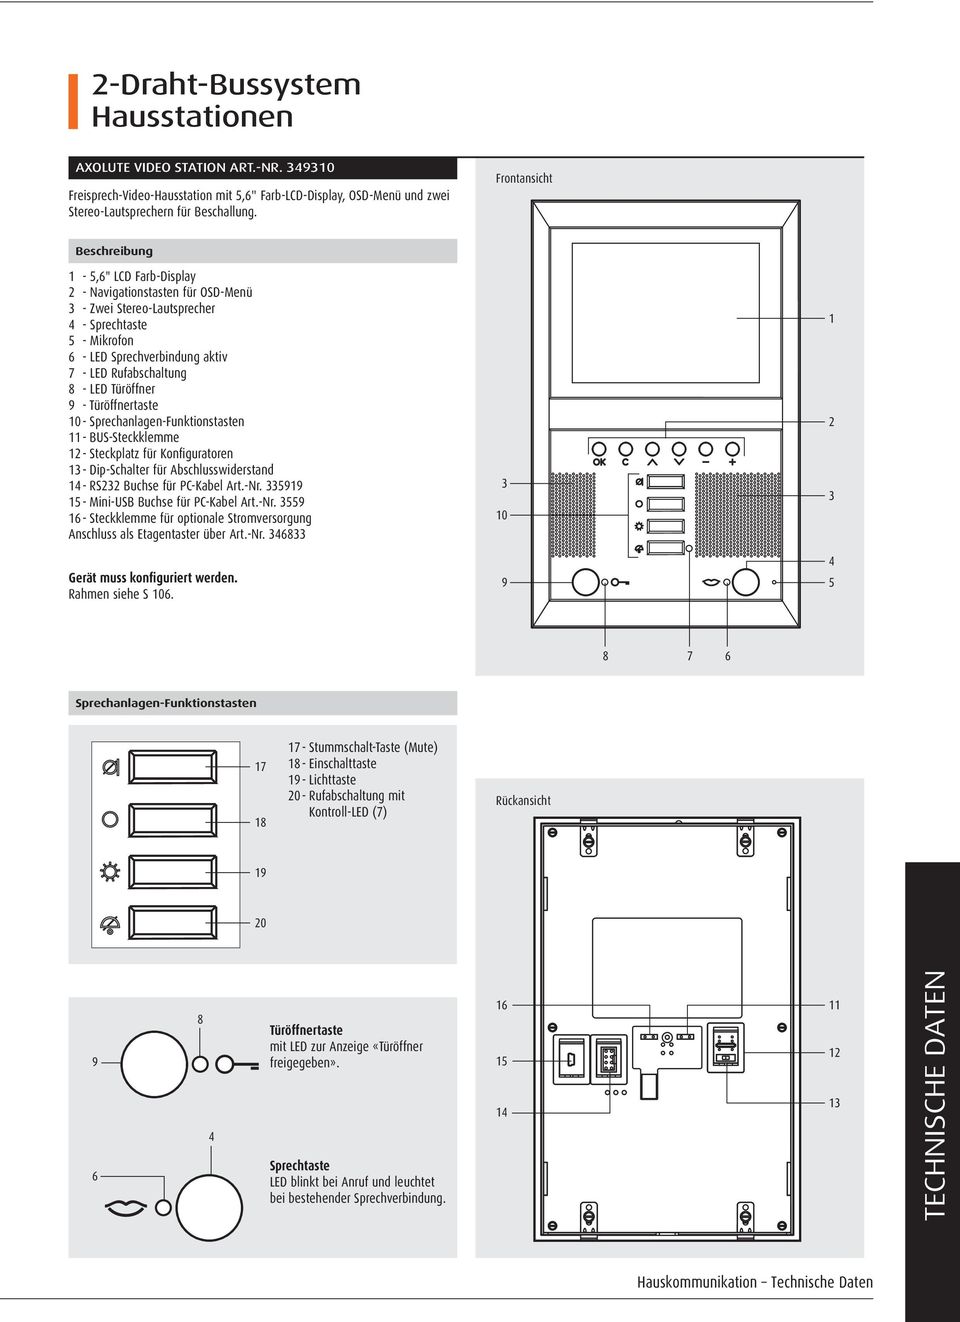 Türöffner 9 - Türöffnertaste 0 - Sprechanlagen-Funktionstasten - -Steckklemme - Steckplatz für Konfiguratoren - Dip-Schalter für Abschlusswiderstand 4 - RS Buchse für PC-Kabel Art.-Nr.